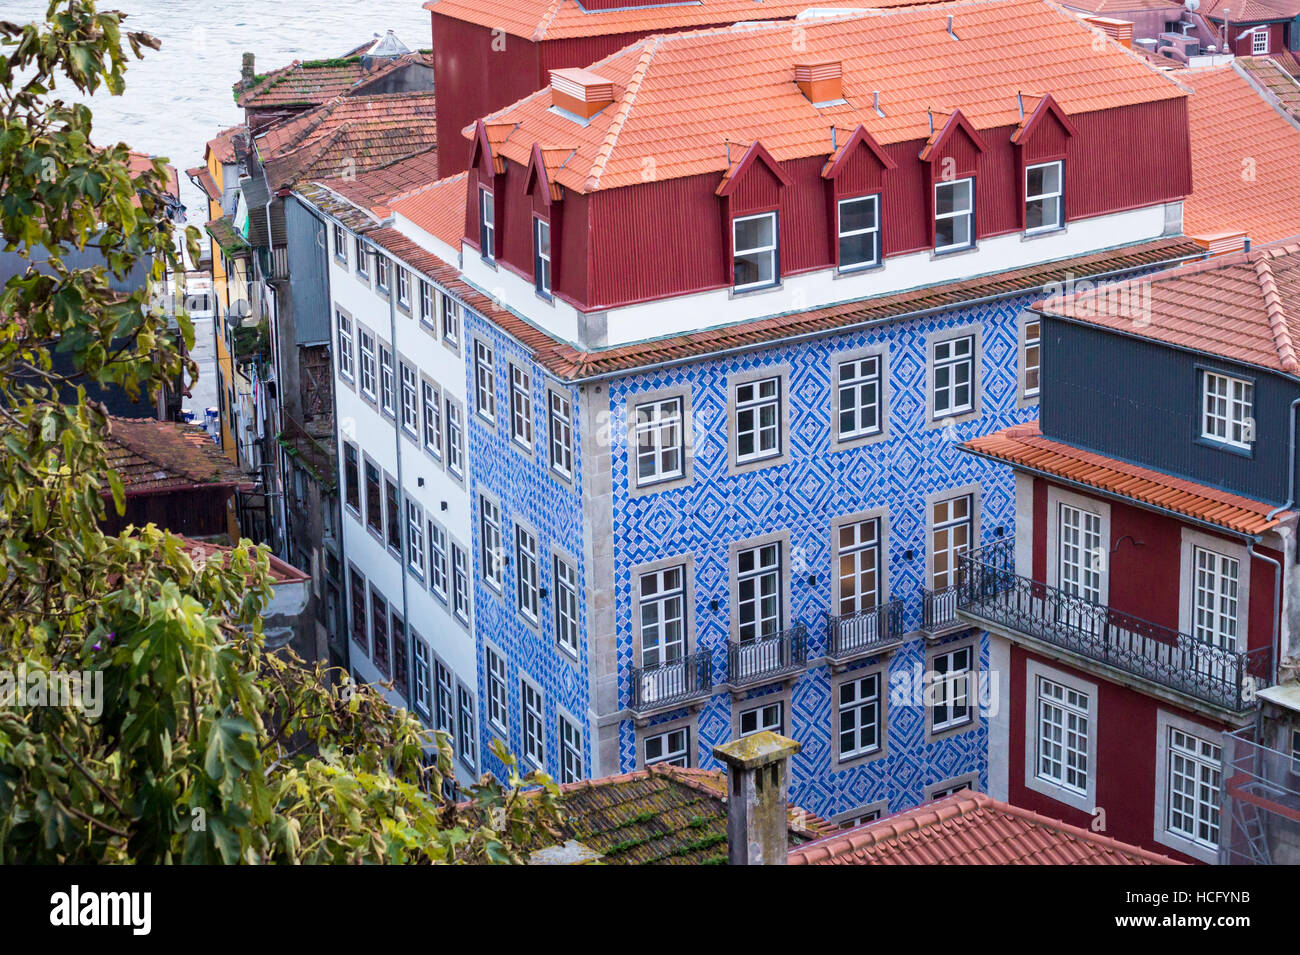 Tuiles Azulejo sur une maison dans la vieille ville, Porto, Portugal Banque D'Images